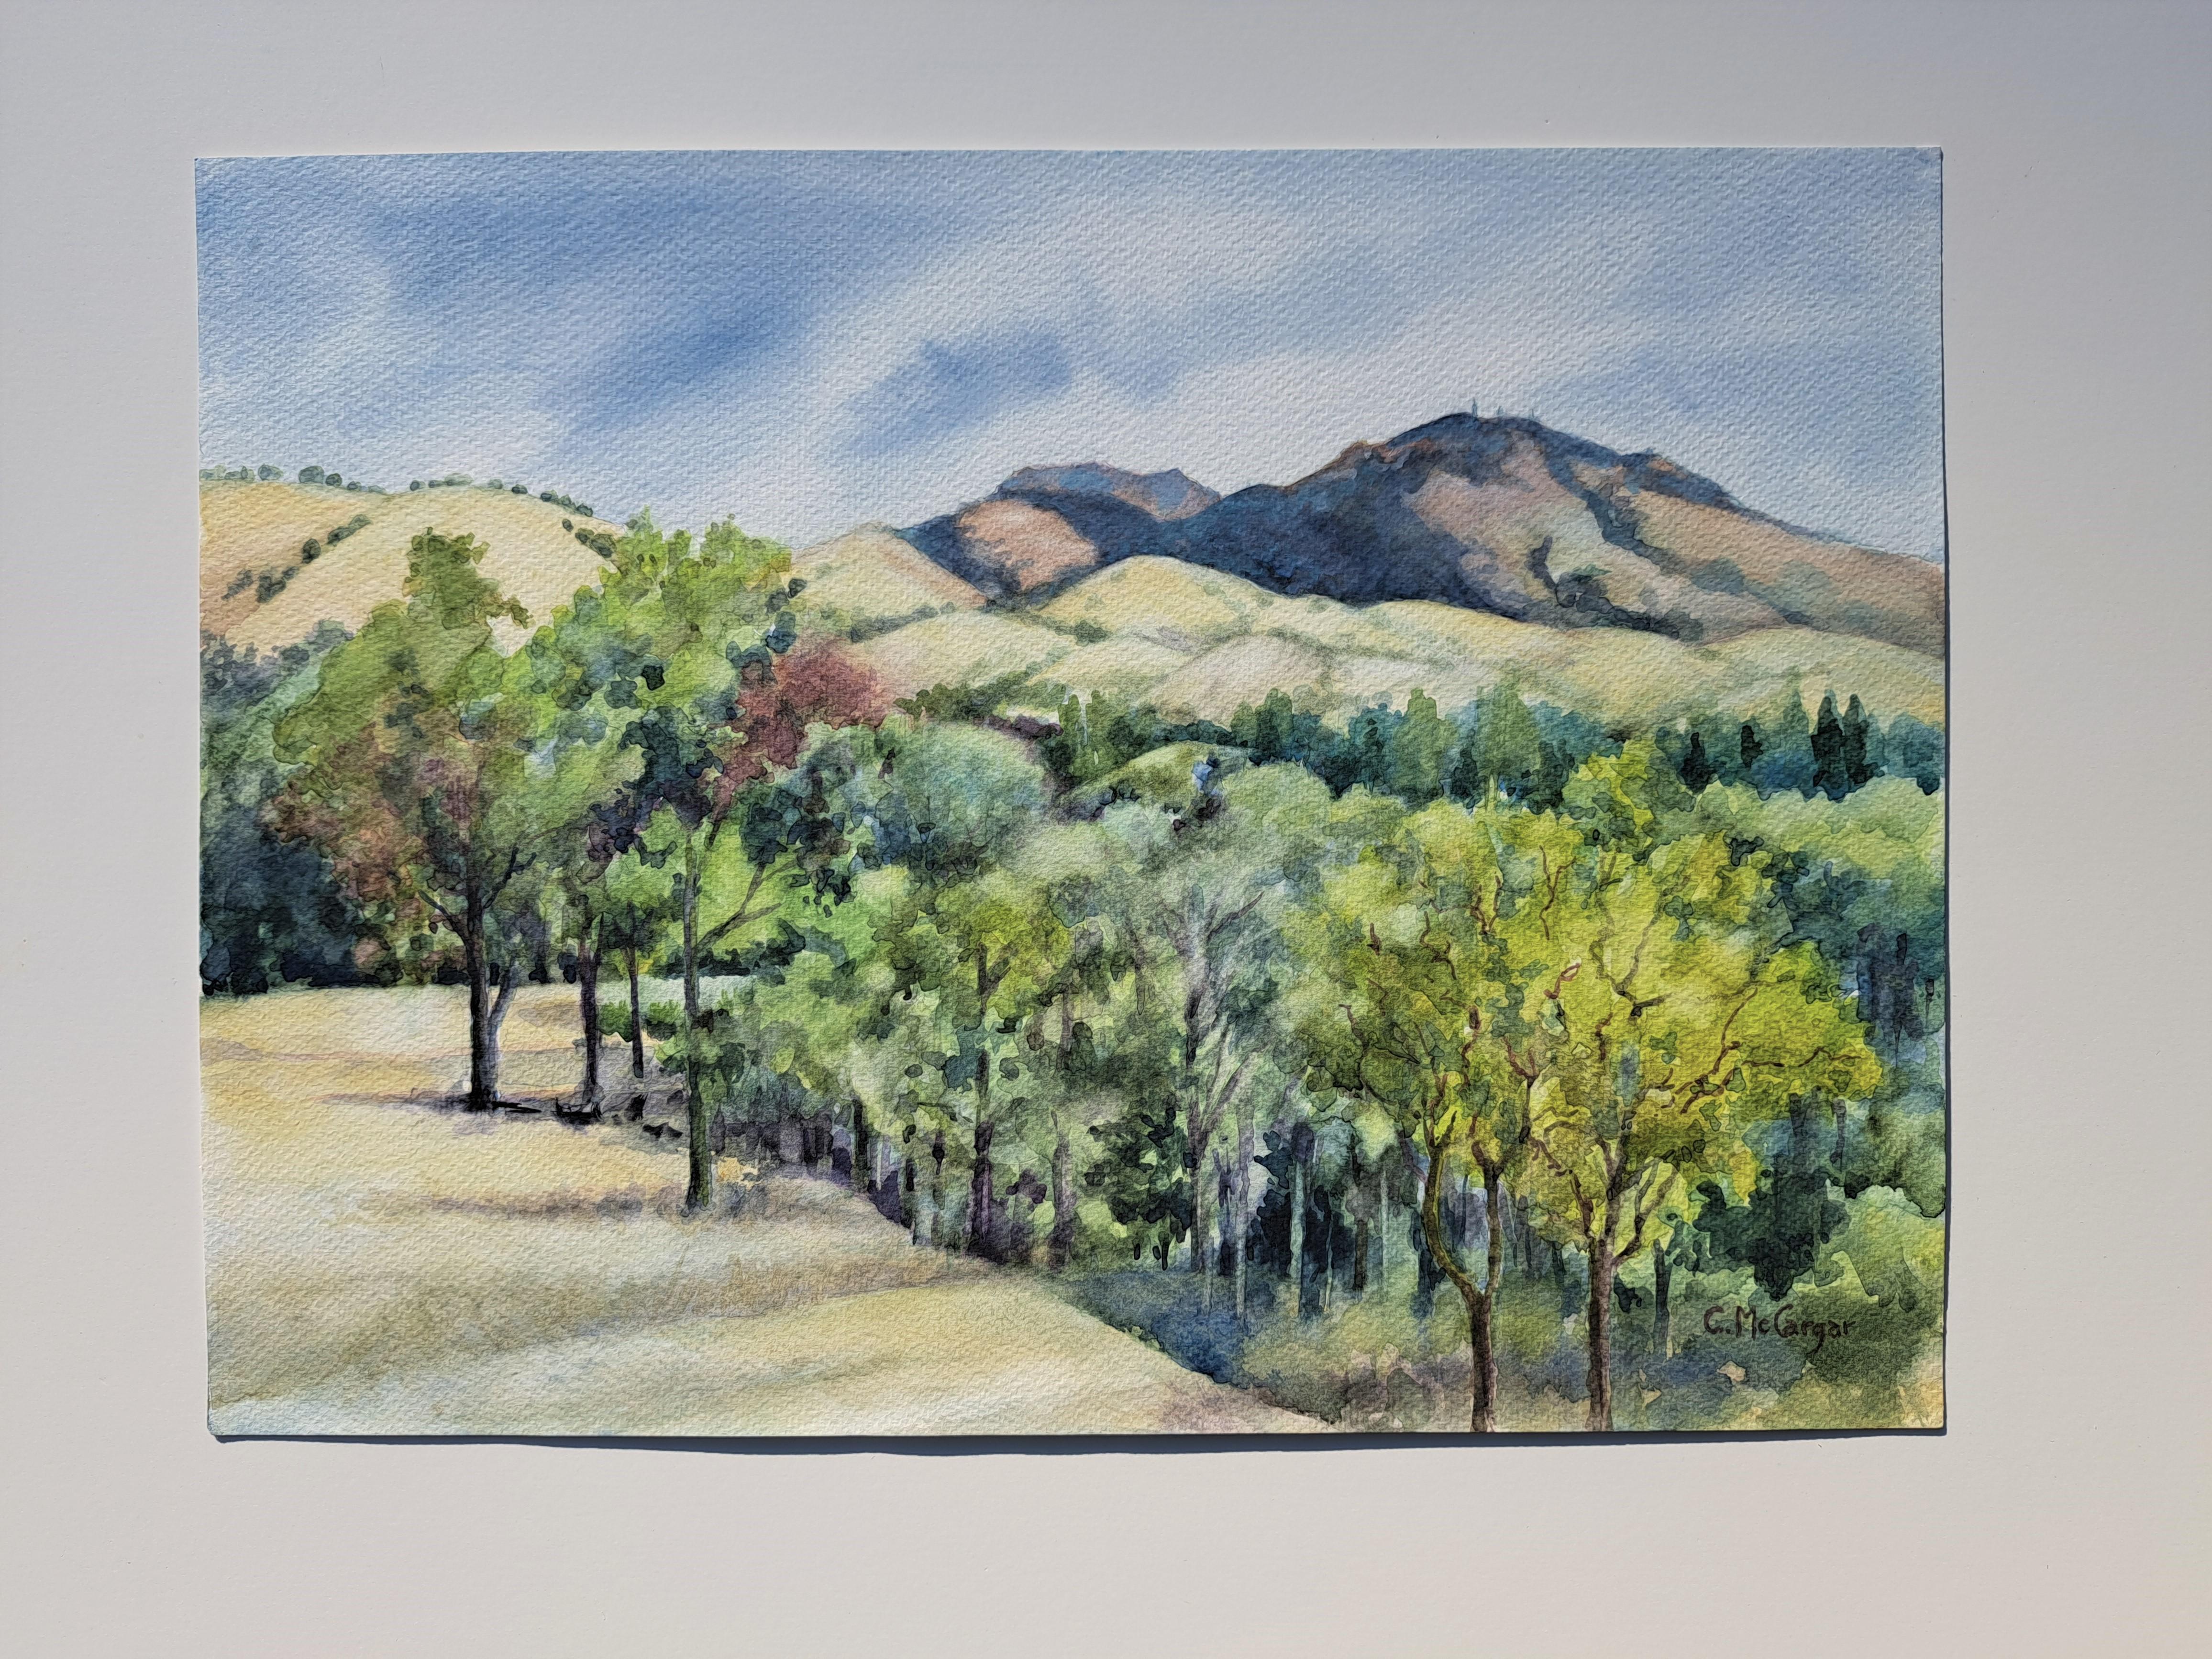 <p>Kommentare der Künstlerin<br>Die Künstlerin Catherine McCargar zeigt eine impressionistisch anmutende Landschaft des Mount Diablo. Das dichte Laub der üppigen Bäume raschelt im erfrischenden Luftzug der Berge. Catherine bemerkt, dass die dunklen